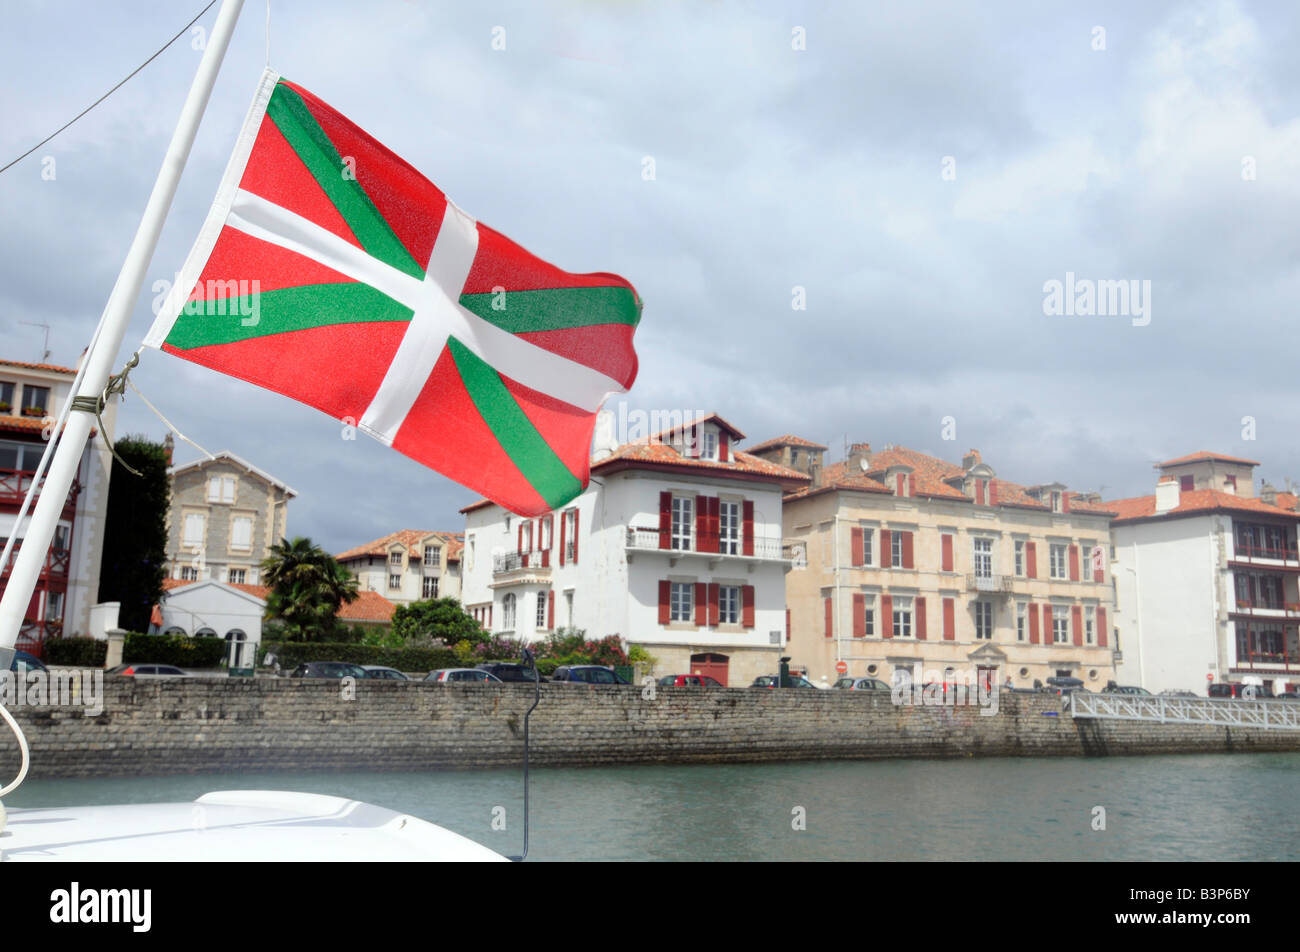 Eine baskische Flagge vom Mast des Bootes im Hafen von St Jean de Luz, einer kleinen Stadt in den Pays Basque, Südwest-Frankreich Stockfoto